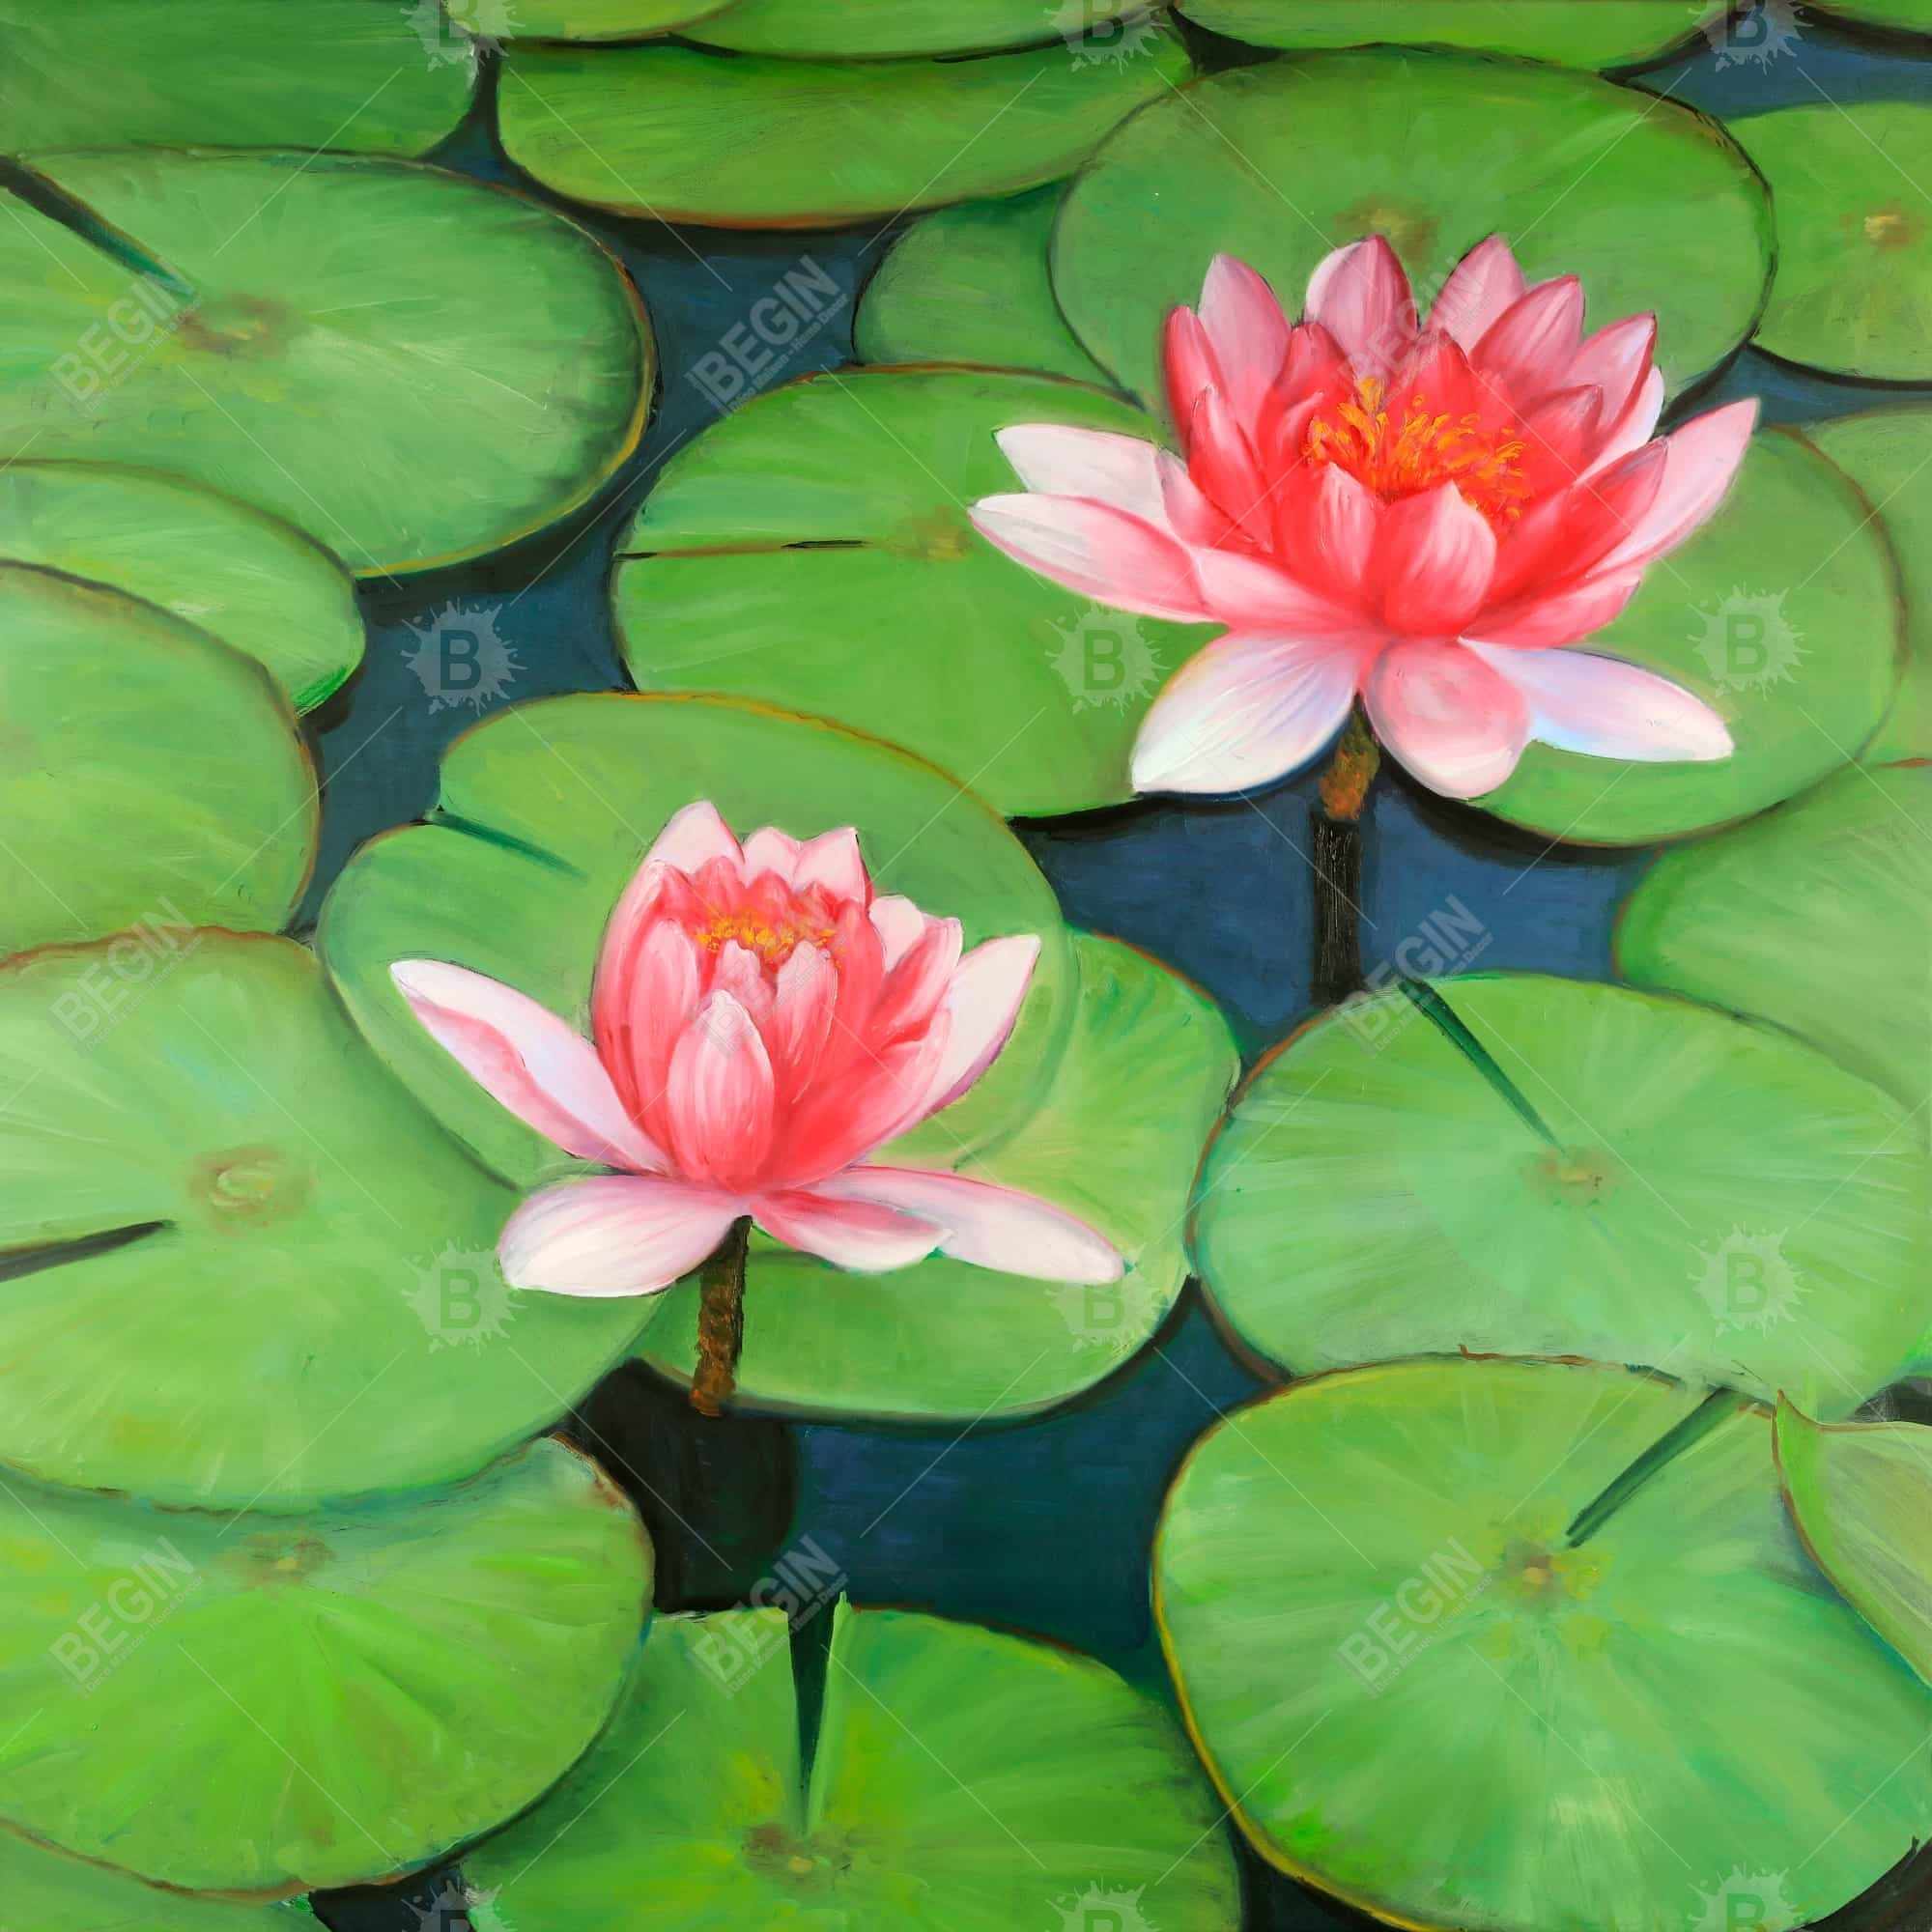 Lotus flowers in a swamp